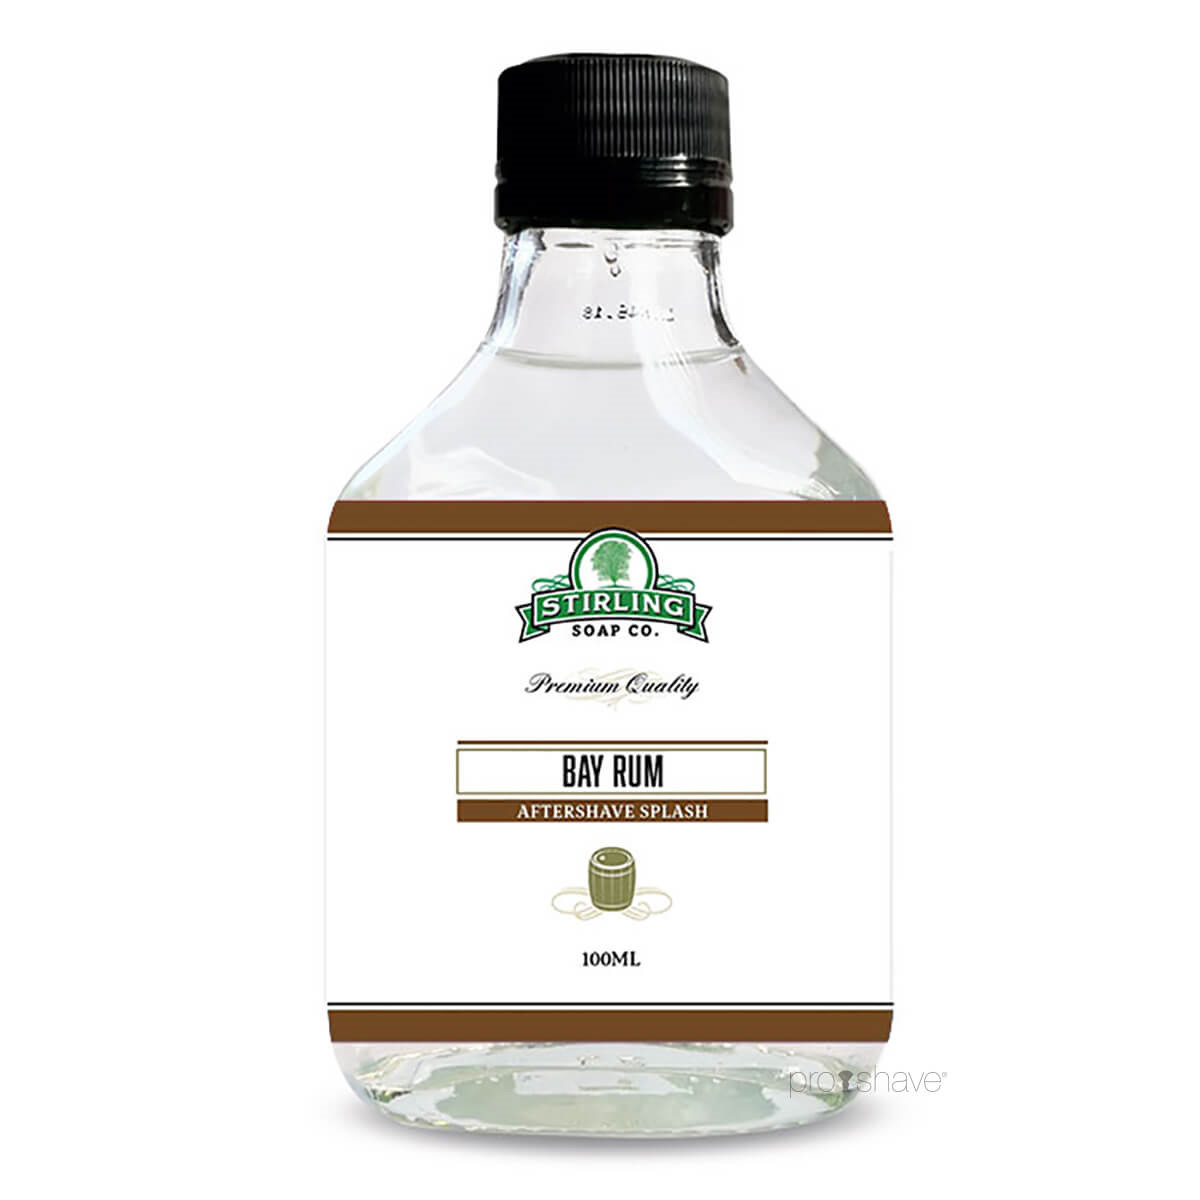 Stirling Soap Co. Aftershave Splash, Bay Rum, 100 ml.